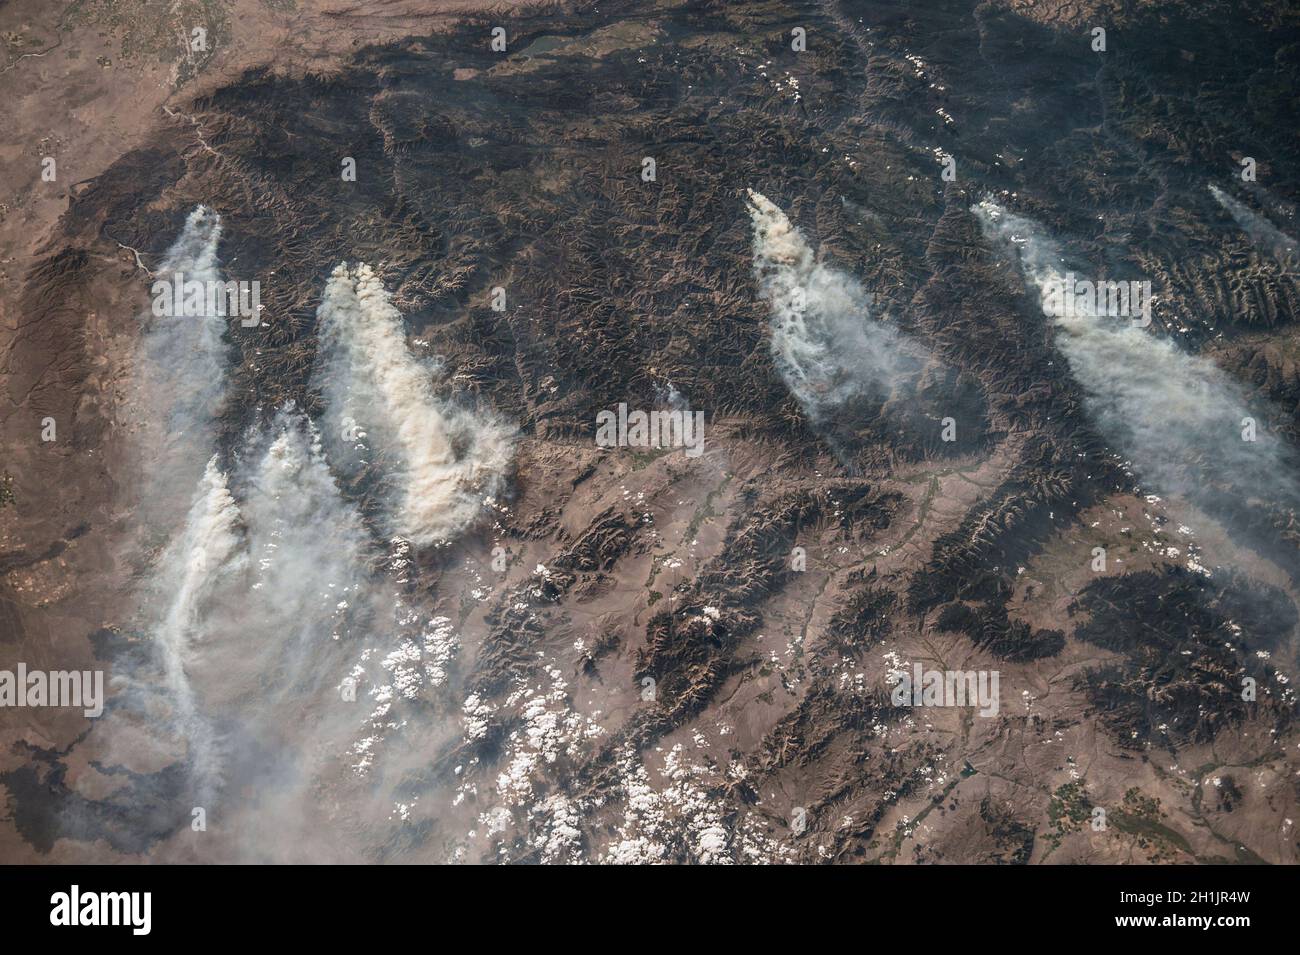 La Terre vue de la Station spatiale internationale: Idaho, Etats-Unis.Août 2013.Les zones sombres sont toutes des montagnes boisées.Dans cette région montagneuse, plusieurs incendies peuvent être vus produisant de vastes panaches de fumée, la plupart du temps mis par la foudre.Cette image montre le schéma commun des vents de l'ouest transportant de la fumée dans une direction de l'est.Une version optimisée et améliorée d'une NASA image / crédit NASA. Banque D'Images